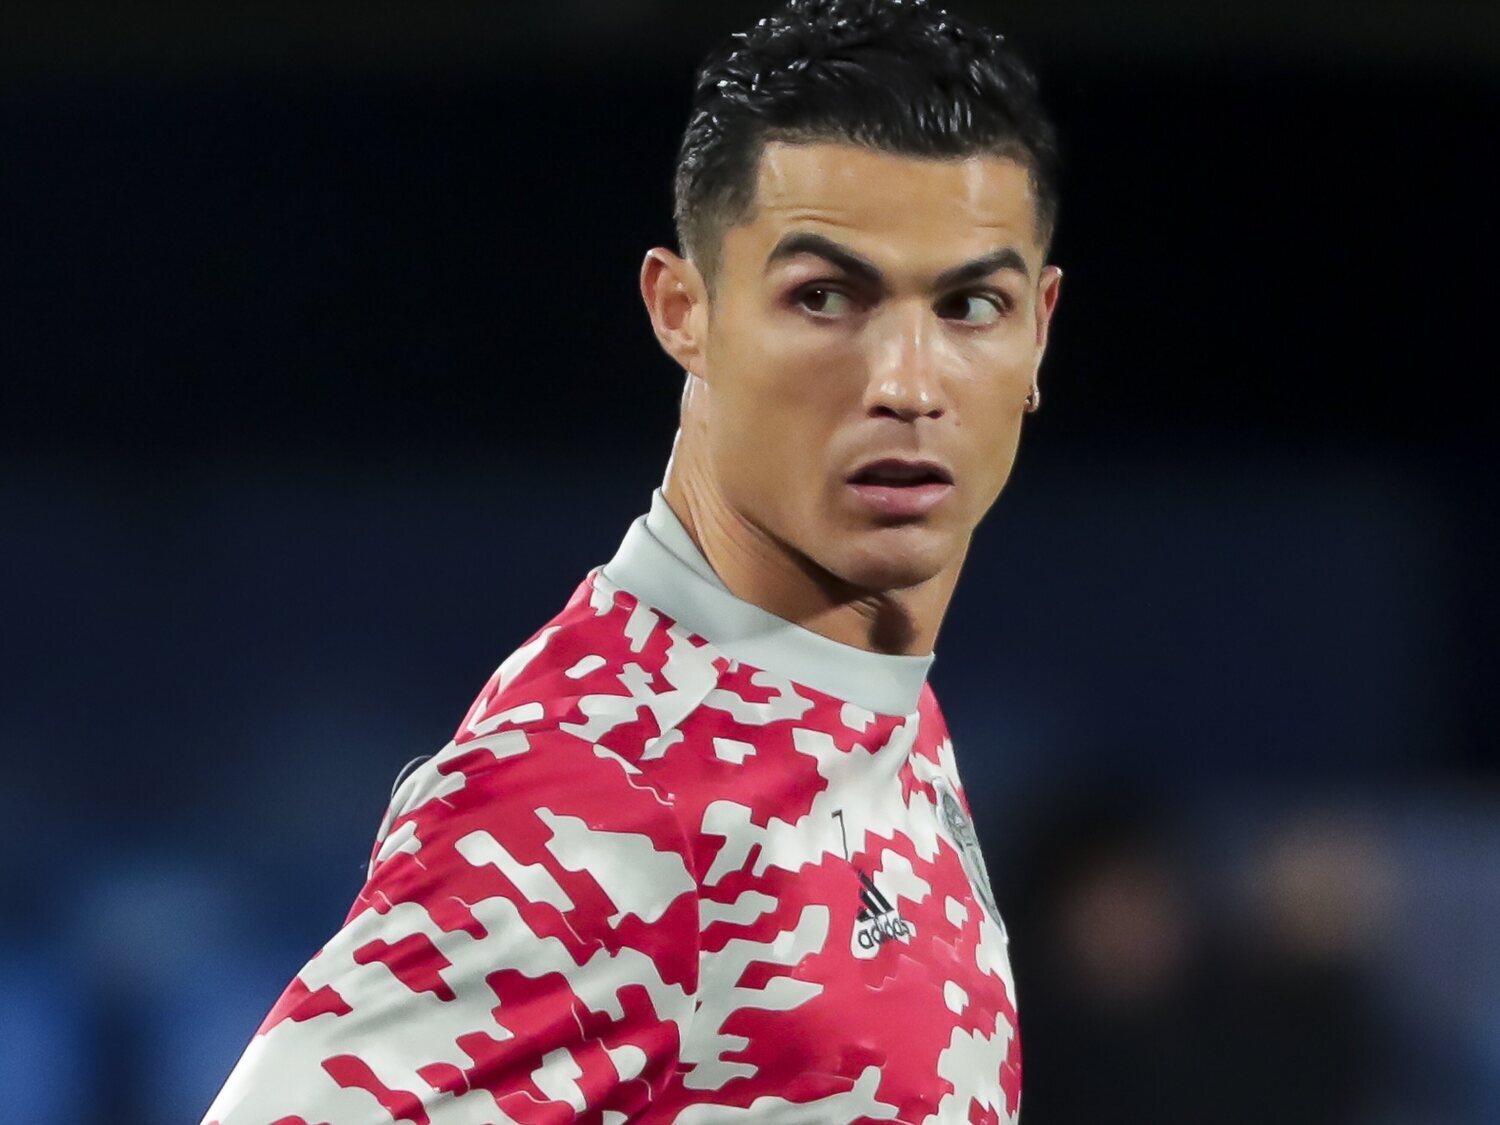 Piden encarcelar y la deportación inmediata de Cristiano Ronaldo por cometer un "acto público indecente"